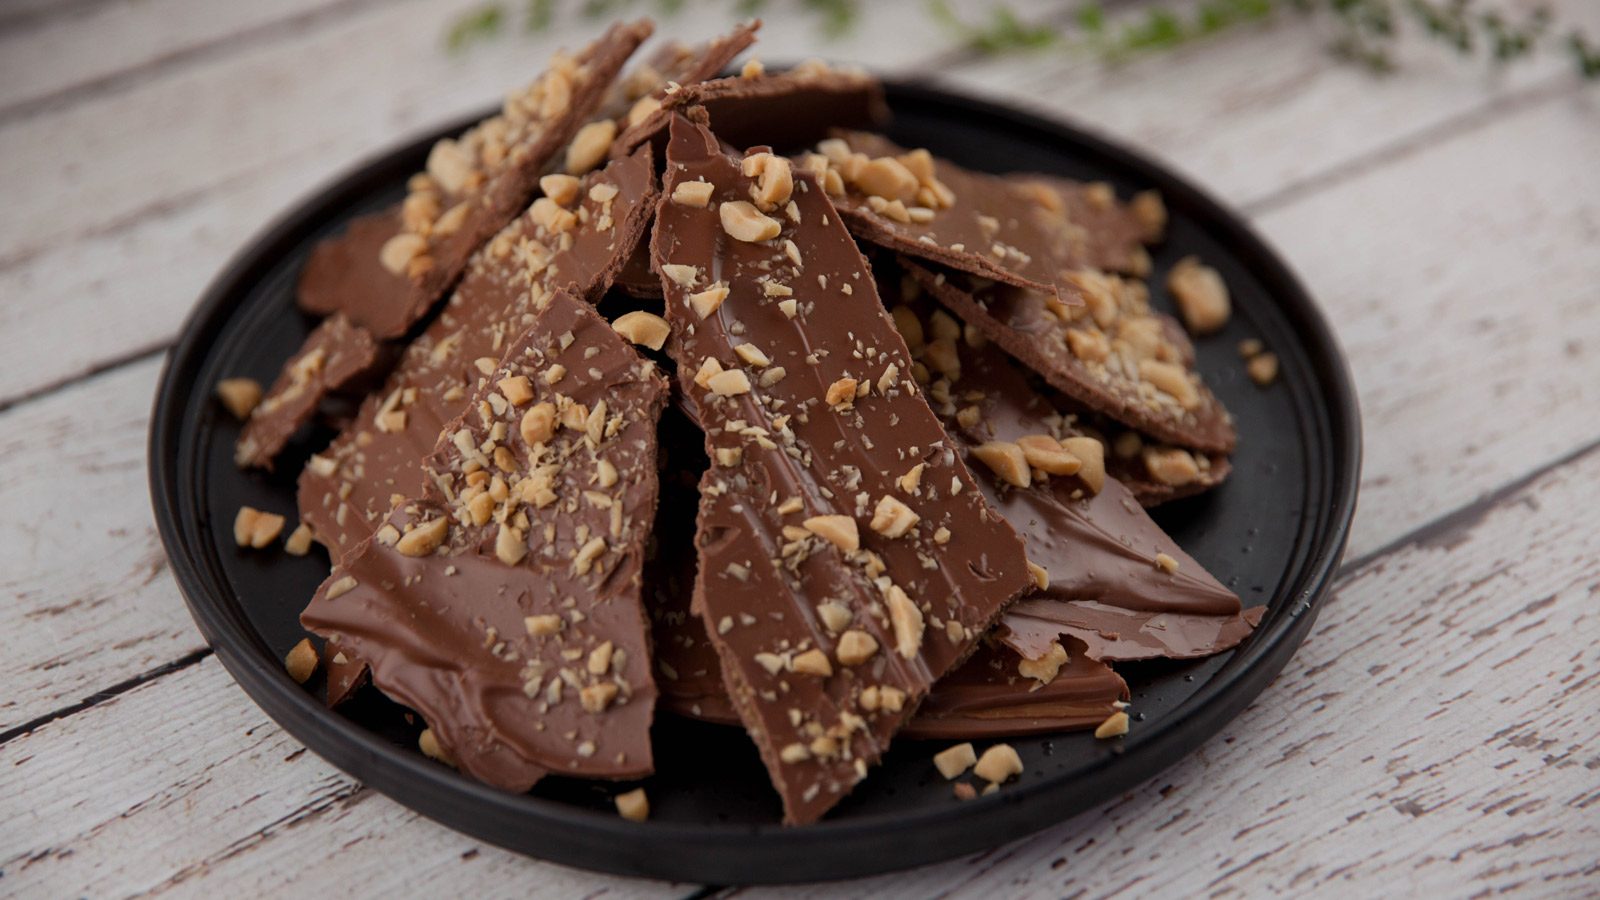 Corteza de chocolate y mantequilla de cacahuete (Peanut butter chocolate  bark) - Kirsten Tibballs - Receta - Canal Cocina